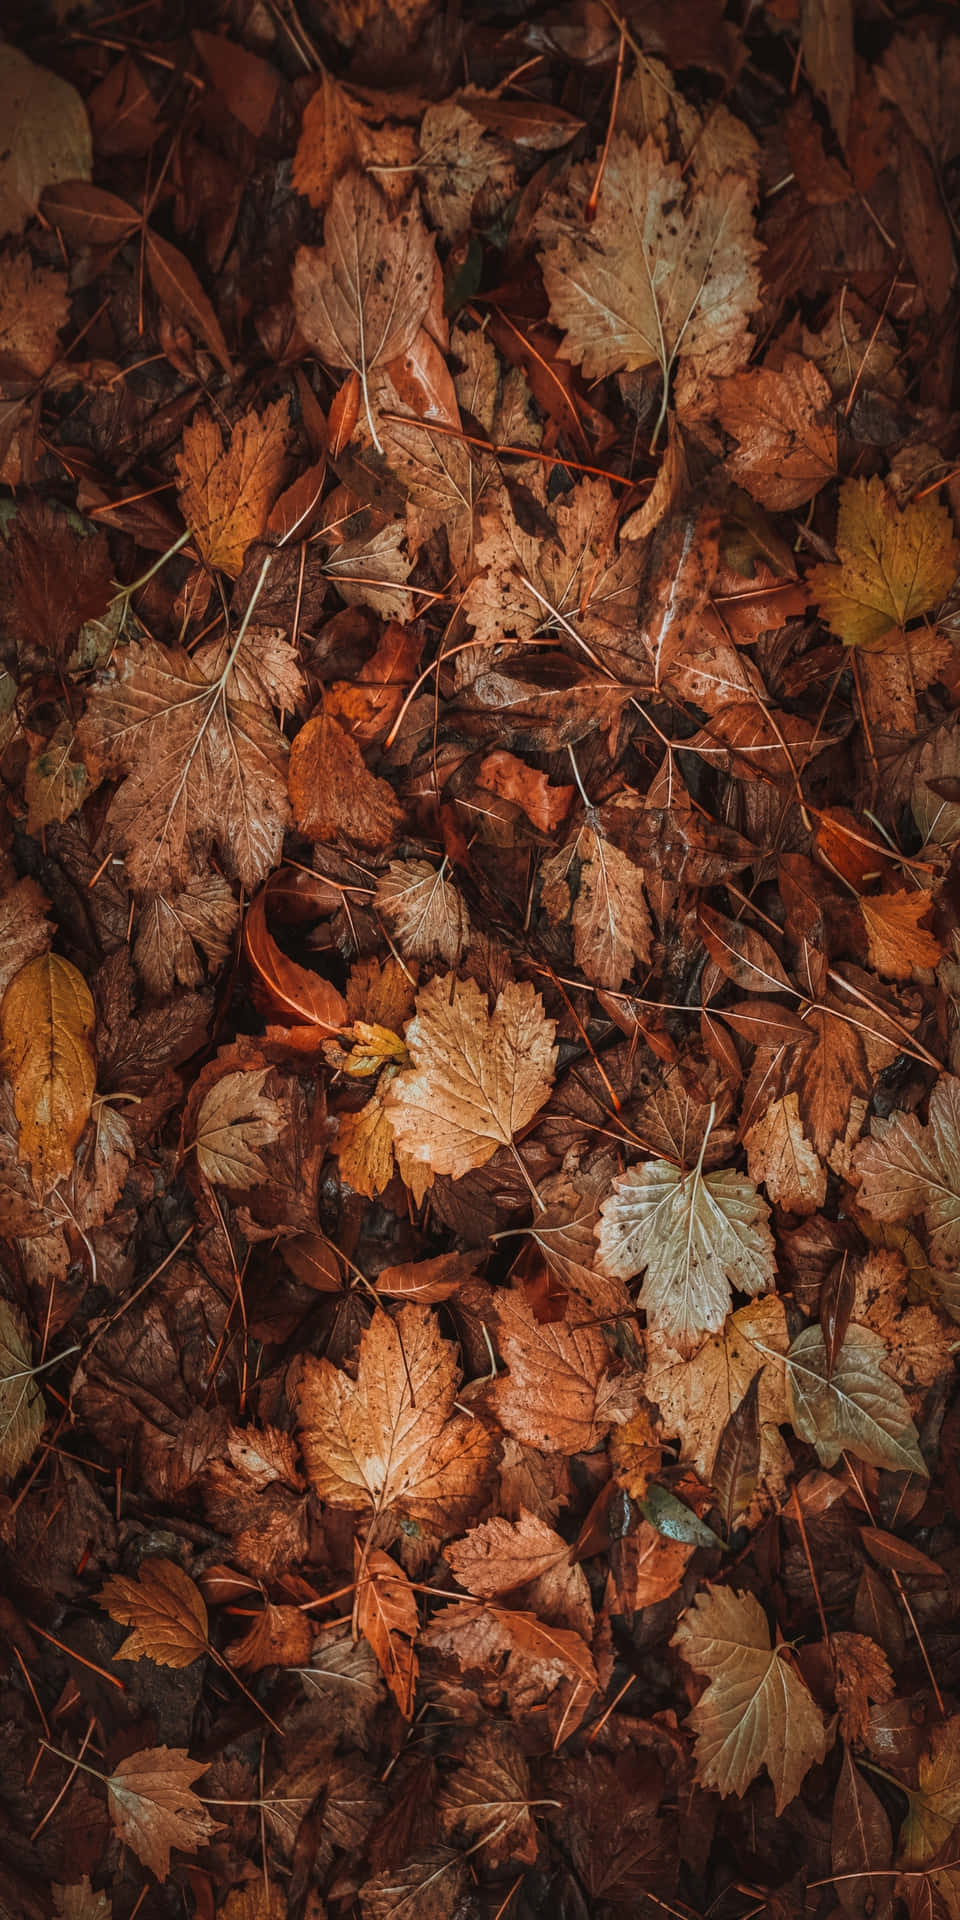 Pixel3 Bakgrundsbild Med Torra Löv På Marken Under Hösten.